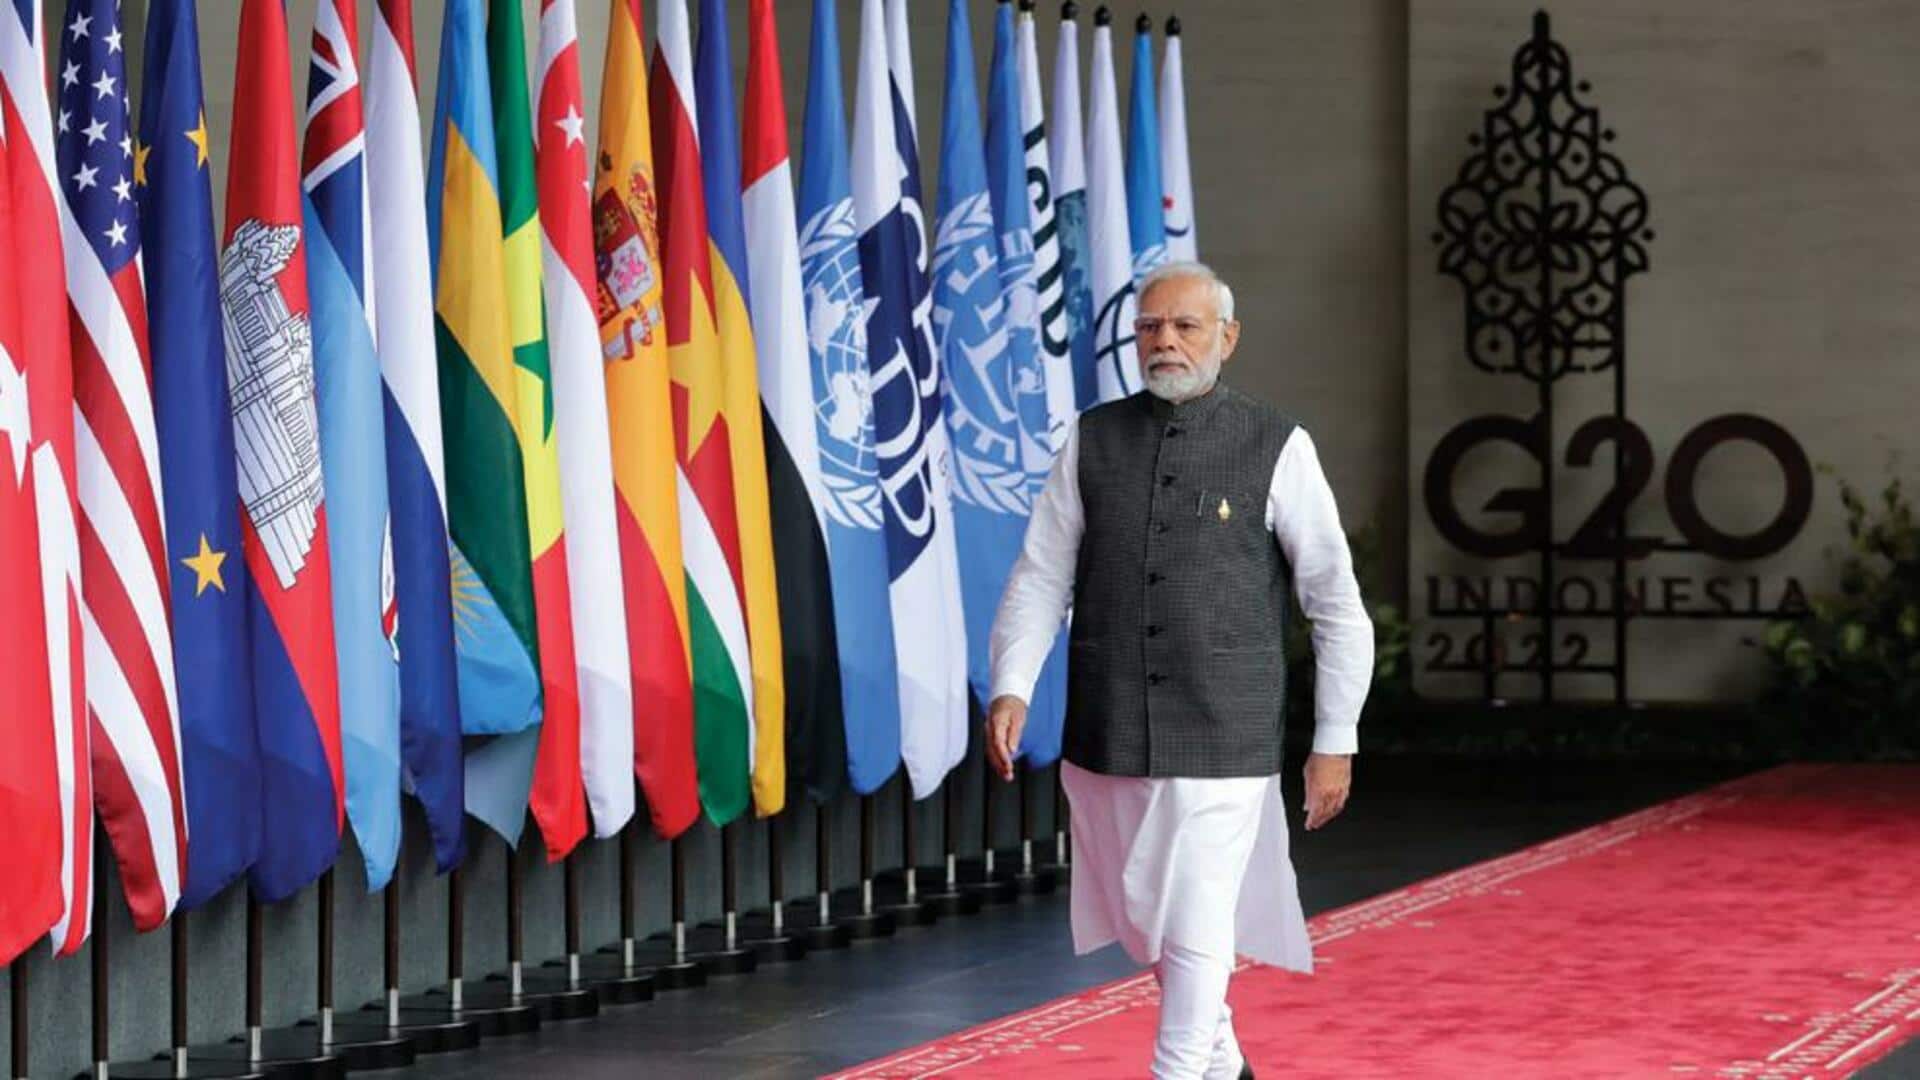 ஜி20 உச்சி மாநாடு: எந்தெந்த உலக தலைவர்கள் இந்தியாவுக்கு வர இருக்கிறார்கள்?